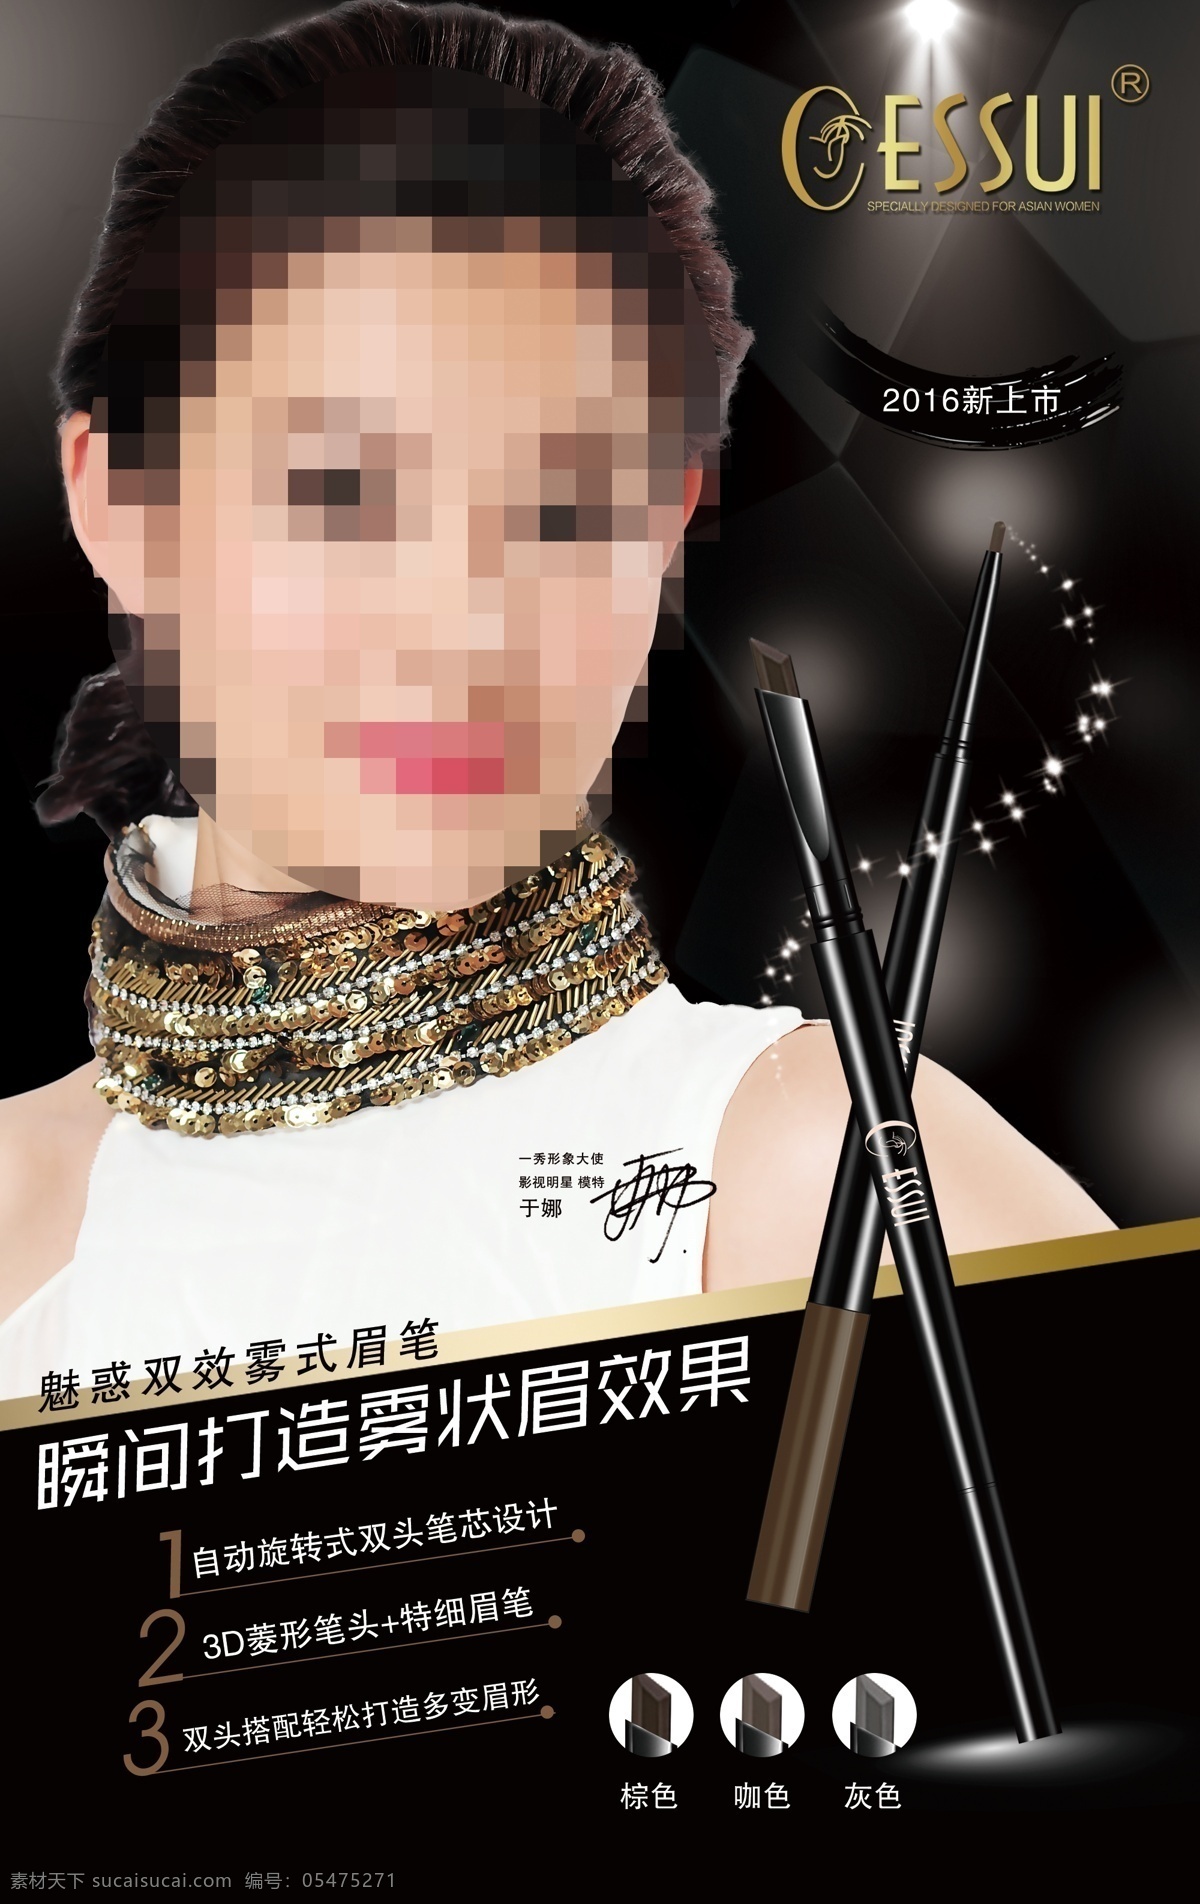 秀 双头 眉笔 明星 广告 神笔 化妆品 彩妆 护肤 美容 竖版 海报 模特 演员 中国台湾 代言 黑色连衣裙 分层